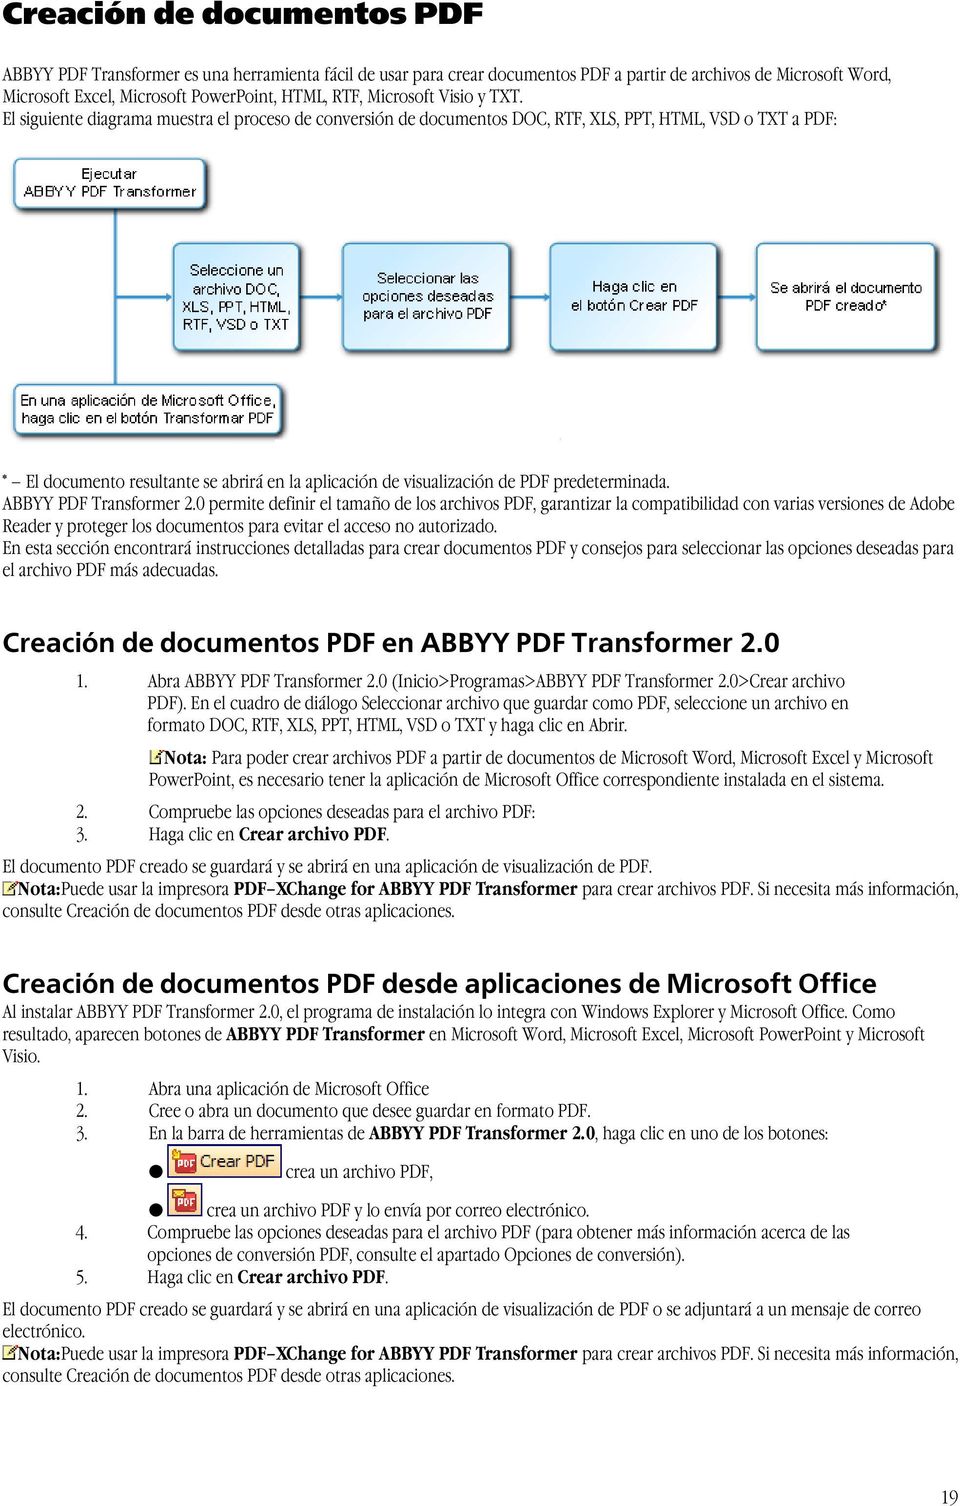 El siguiente diagrama muestra el proceso de conversión de documentos DOC, RTF, XLS, PPT, HTML, VSD o TXT a PDF: * El documento resultante se abrirá en la aplicación de visualización de PDF